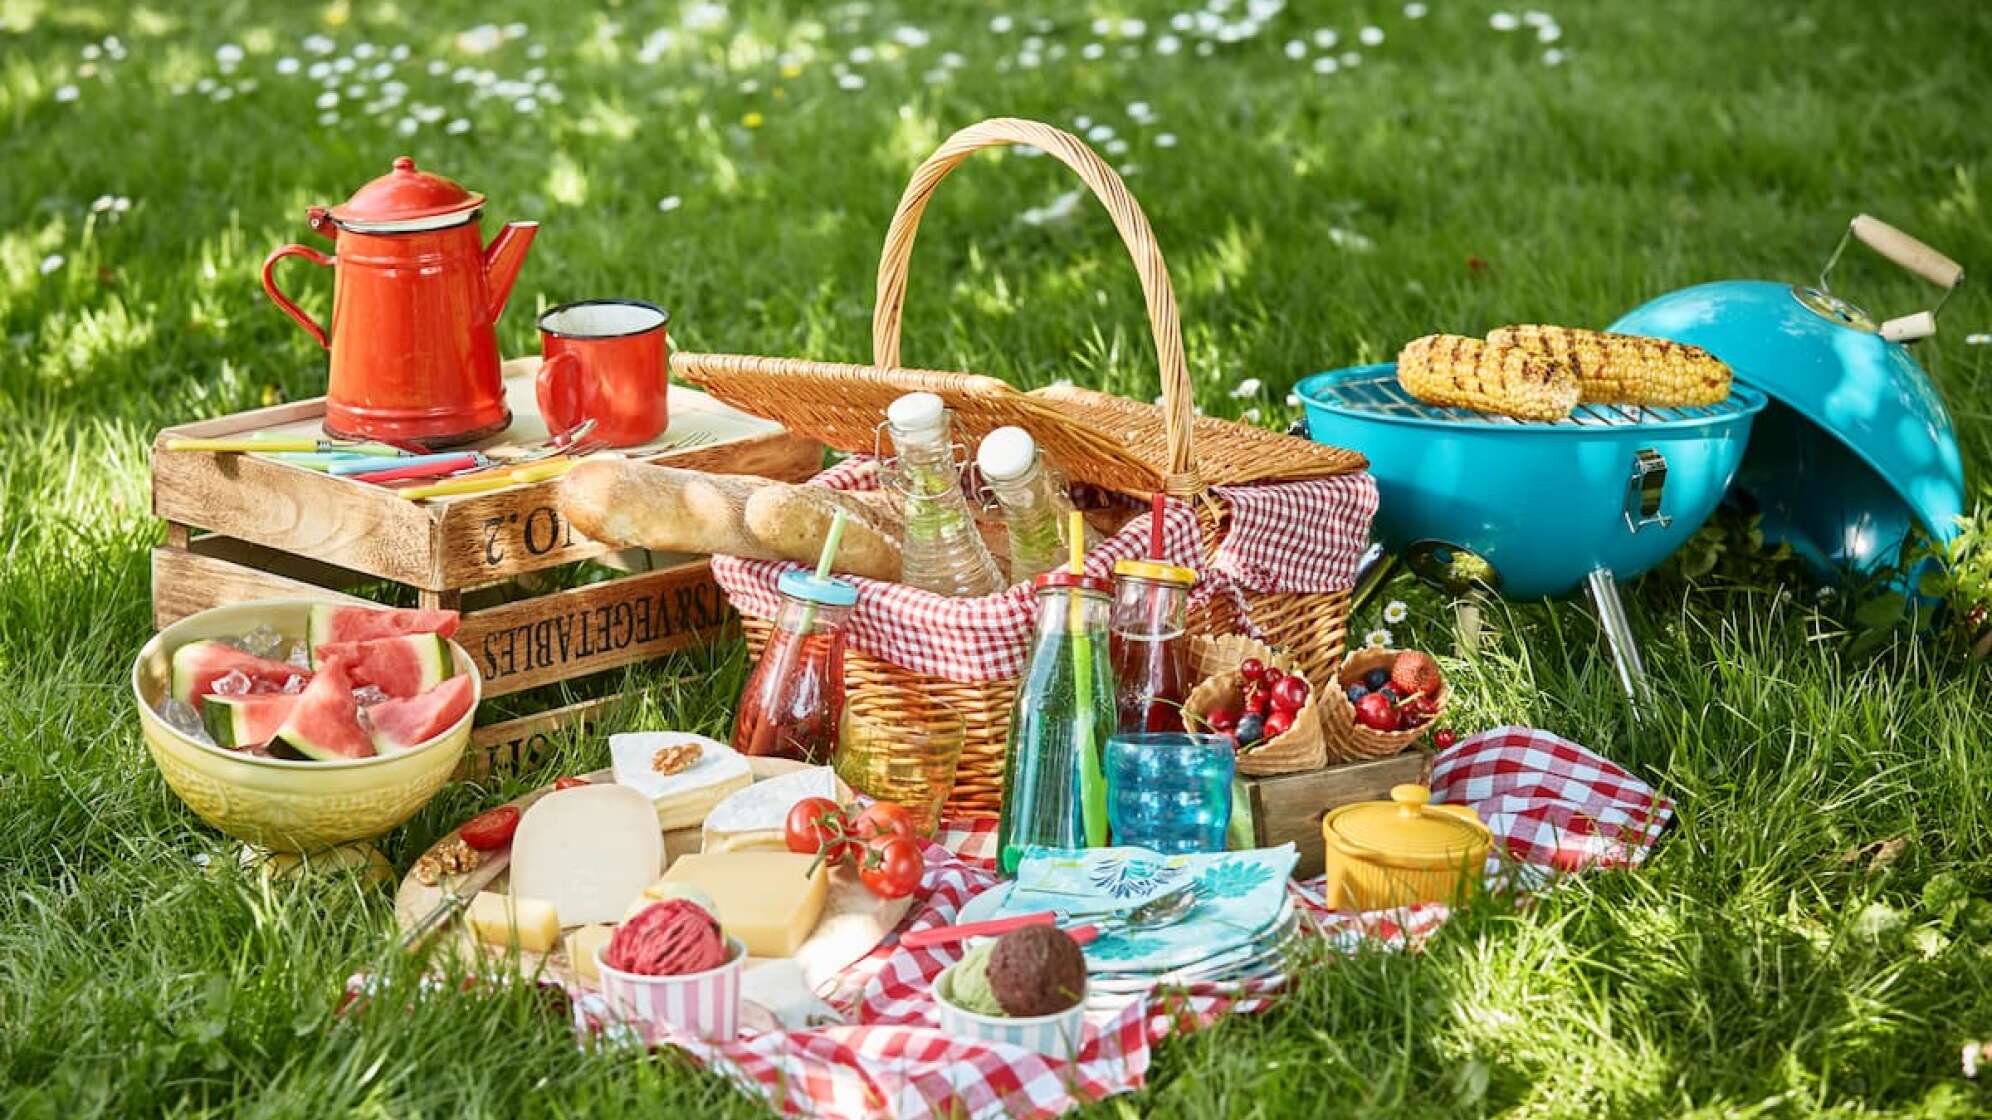 Picknick-Korb auf einer Wiese